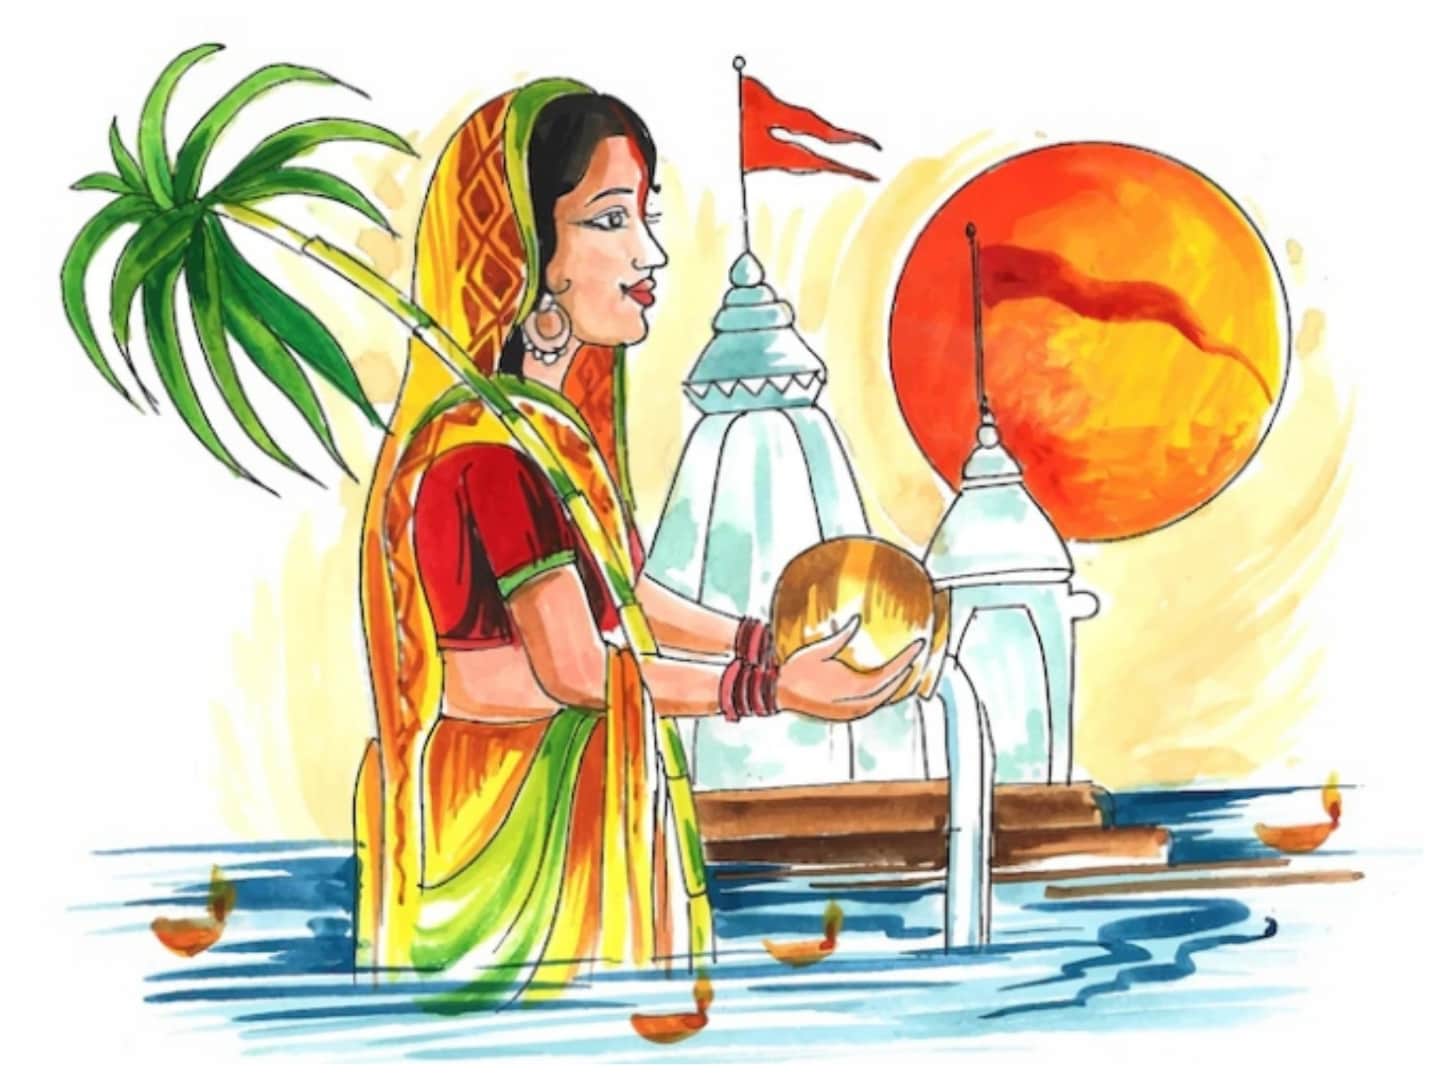 Chhath Puja 2022: पर्यावरण की सफाई और समानता का प्रतीक भी है छठ, दिखता है  श्रद्धा और समर्पण का सैलाब - Chhath Puja 2022 Chhath is also symbol of  cleanliness and equality of environment